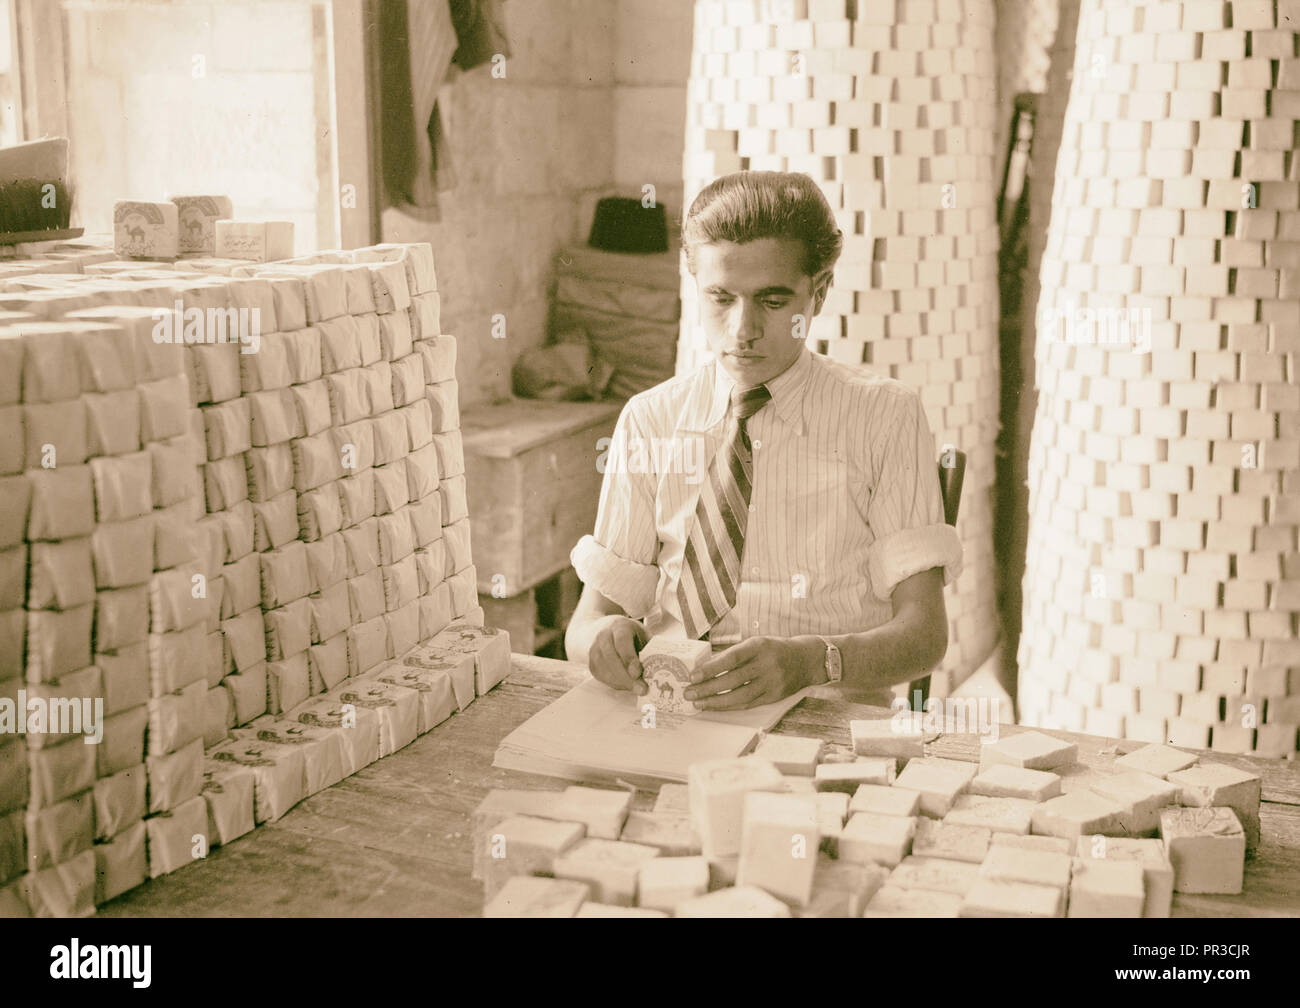 Les usines arabe & améliorations générales à Naplouse, la fabrique de savon. Savon d'enrubannage. 1940, Cisjordanie, Naplouse, Moyen-Orient Banque D'Images